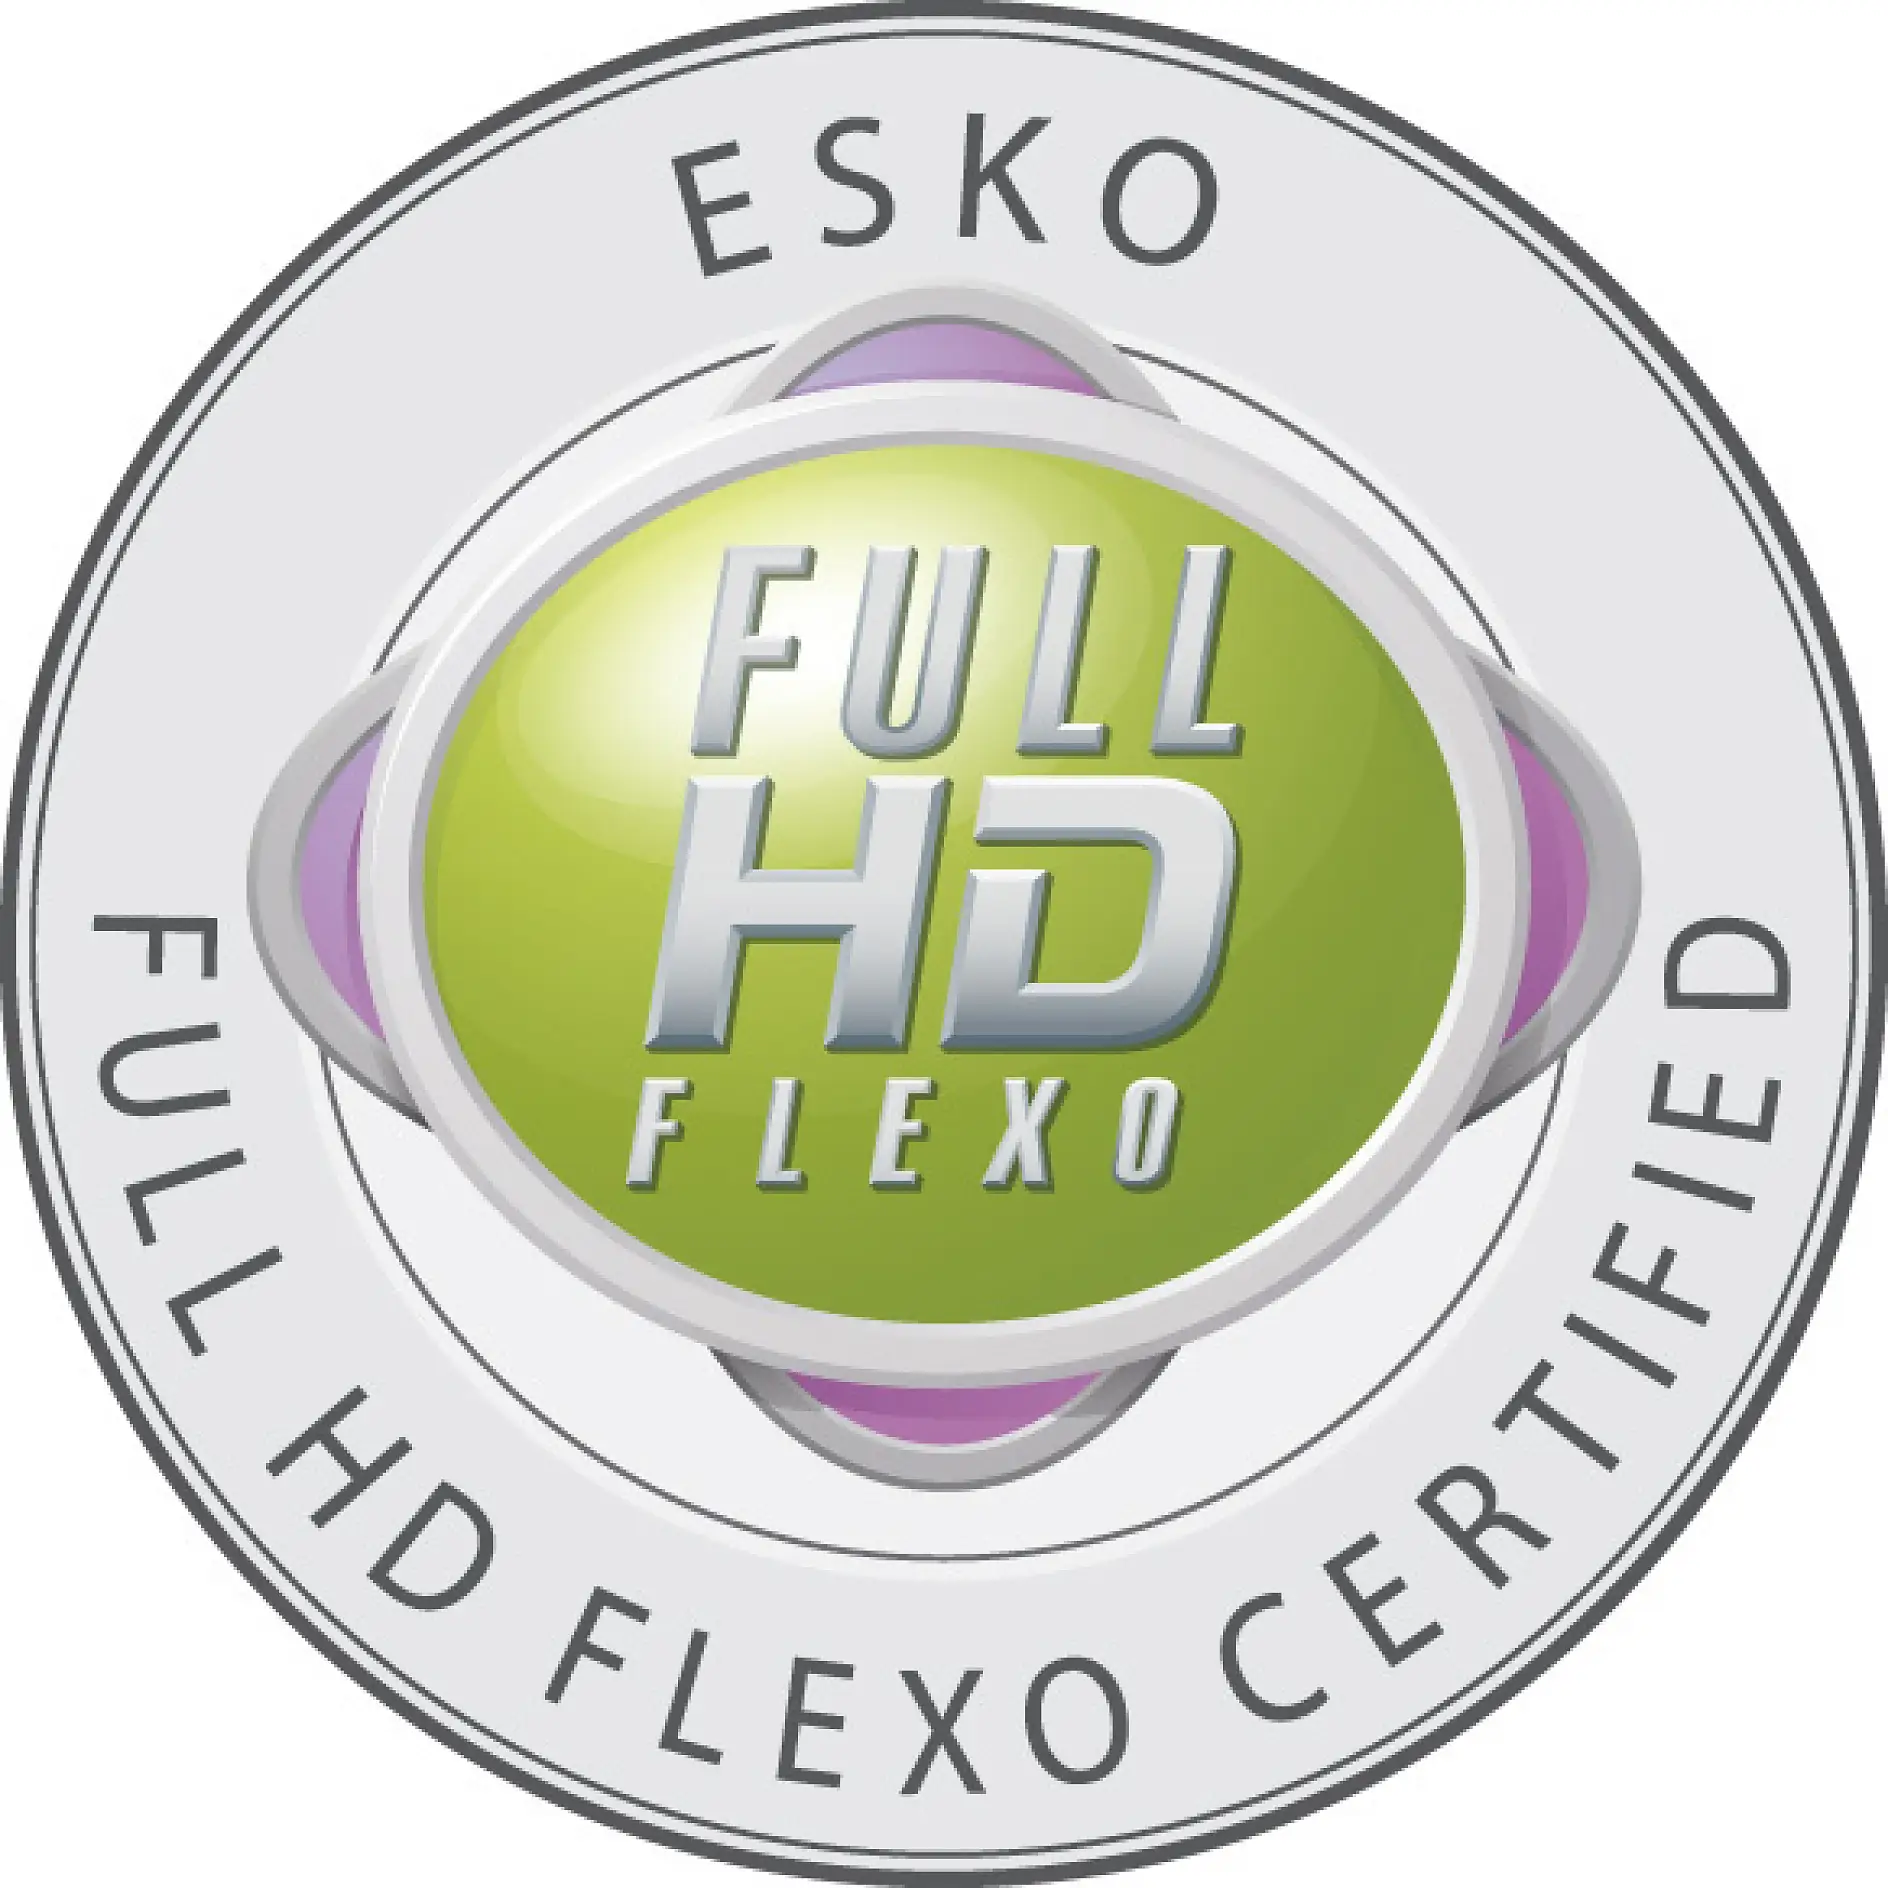 Solo las empresas certificadas están autorizadas a llevar el distintivo Full HD Flexo